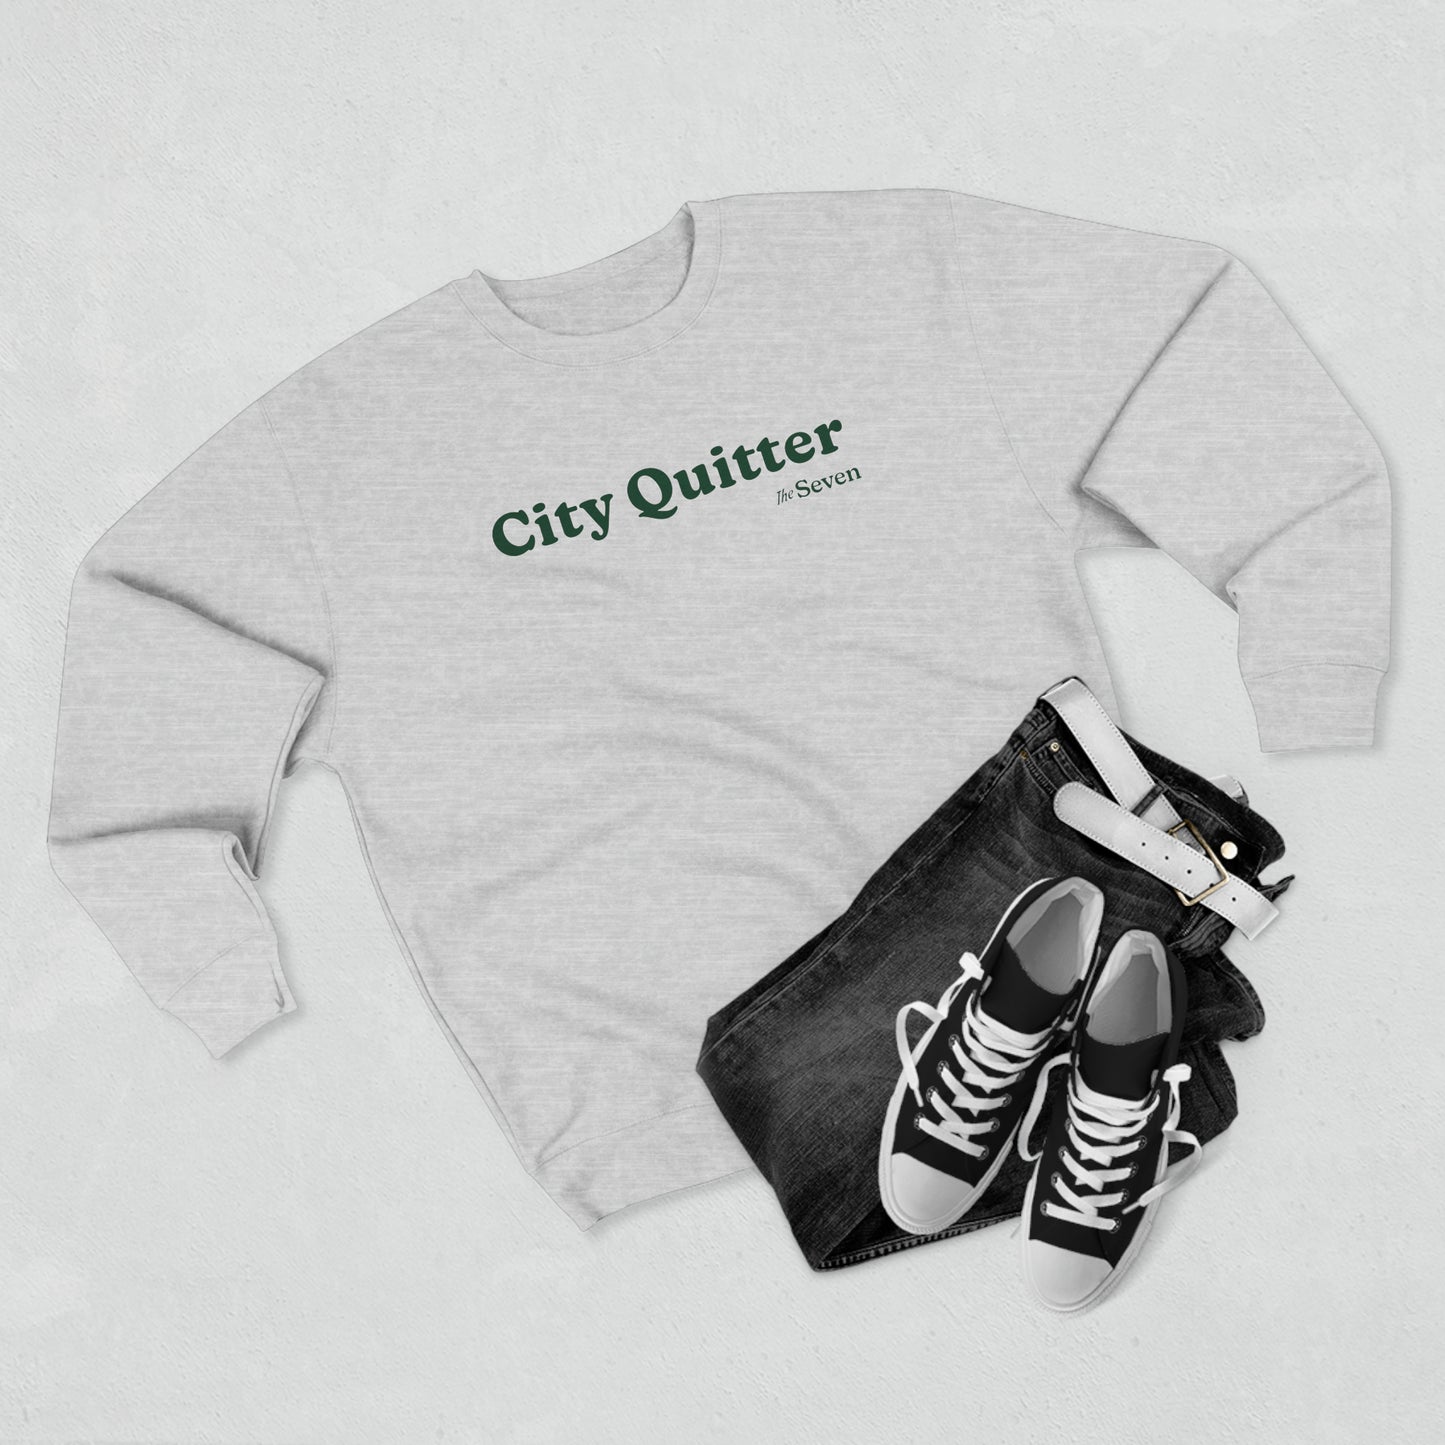 City Quitter - Unisex Crewneck